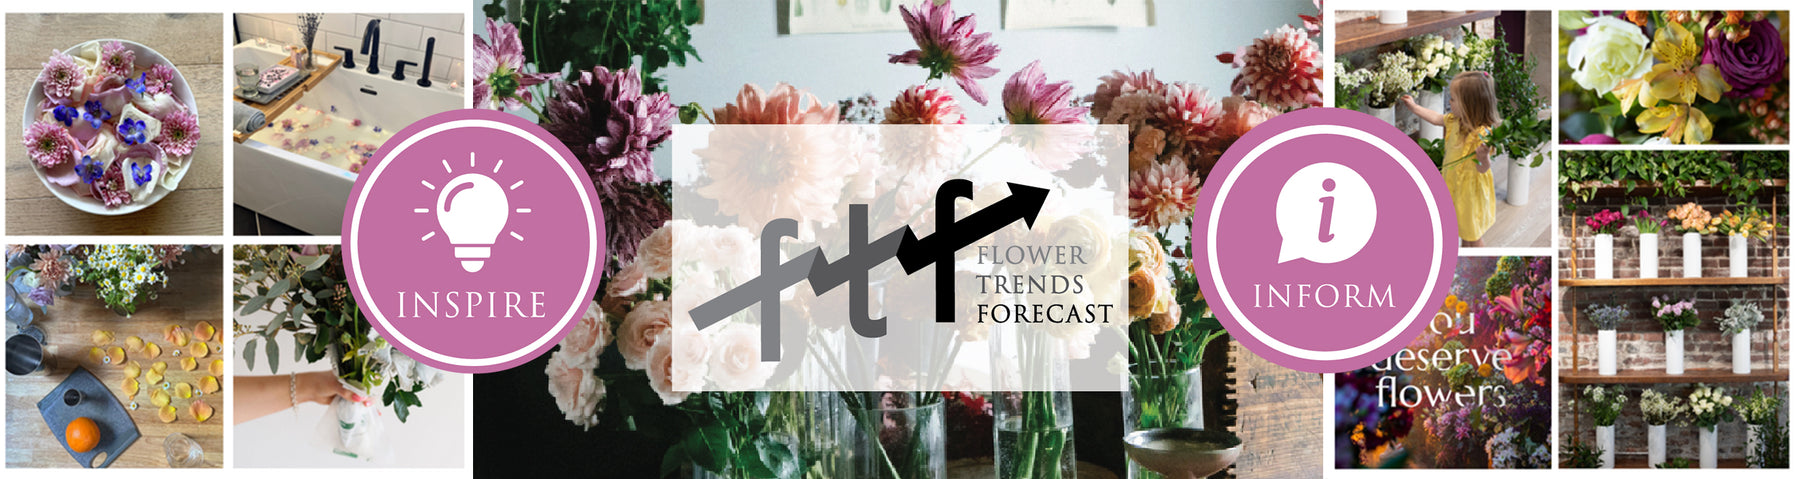 Flower Trends Forecast